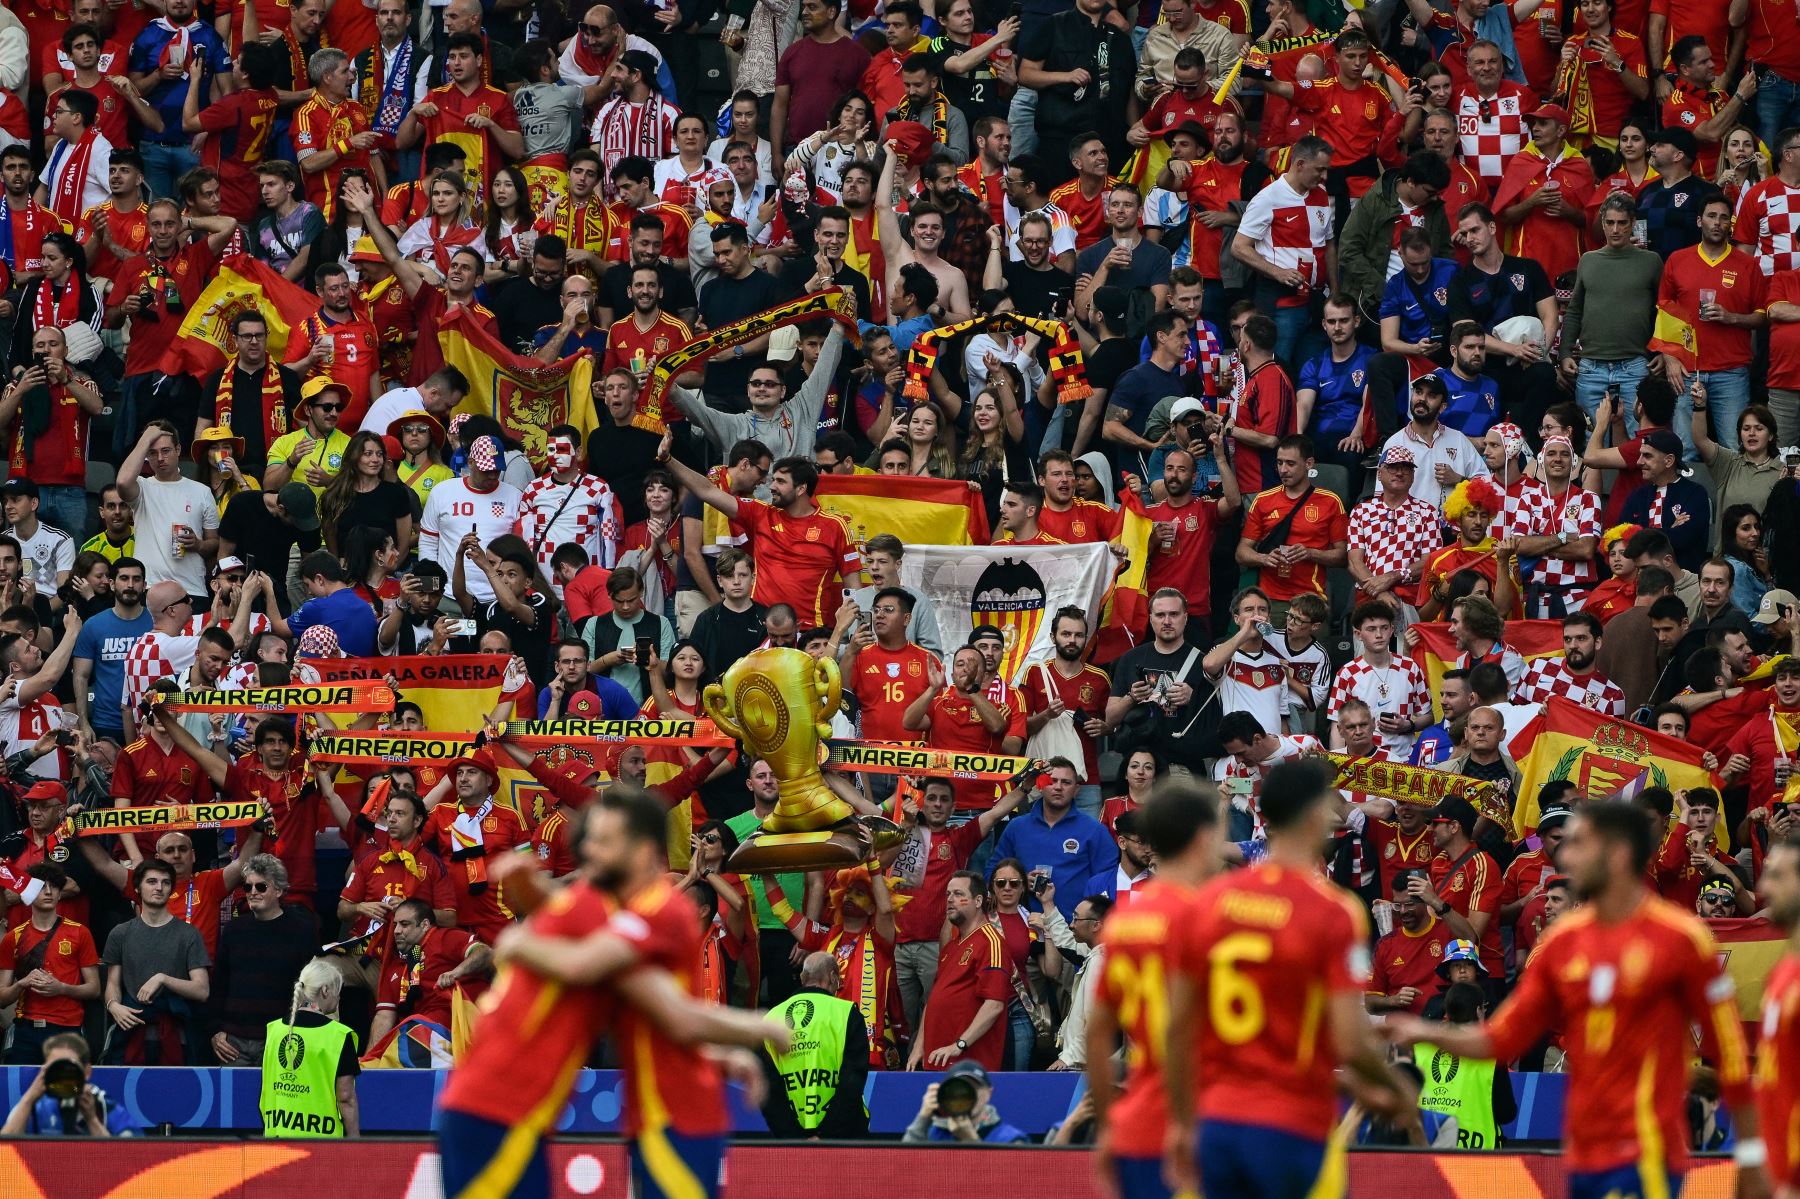 Los seguidores de España celebran después del partido de fútbol del Grupo B de la UEFA Euro 2024 entre España y Croacia en el Olympiastadion de Berlín.
Foto: AFP